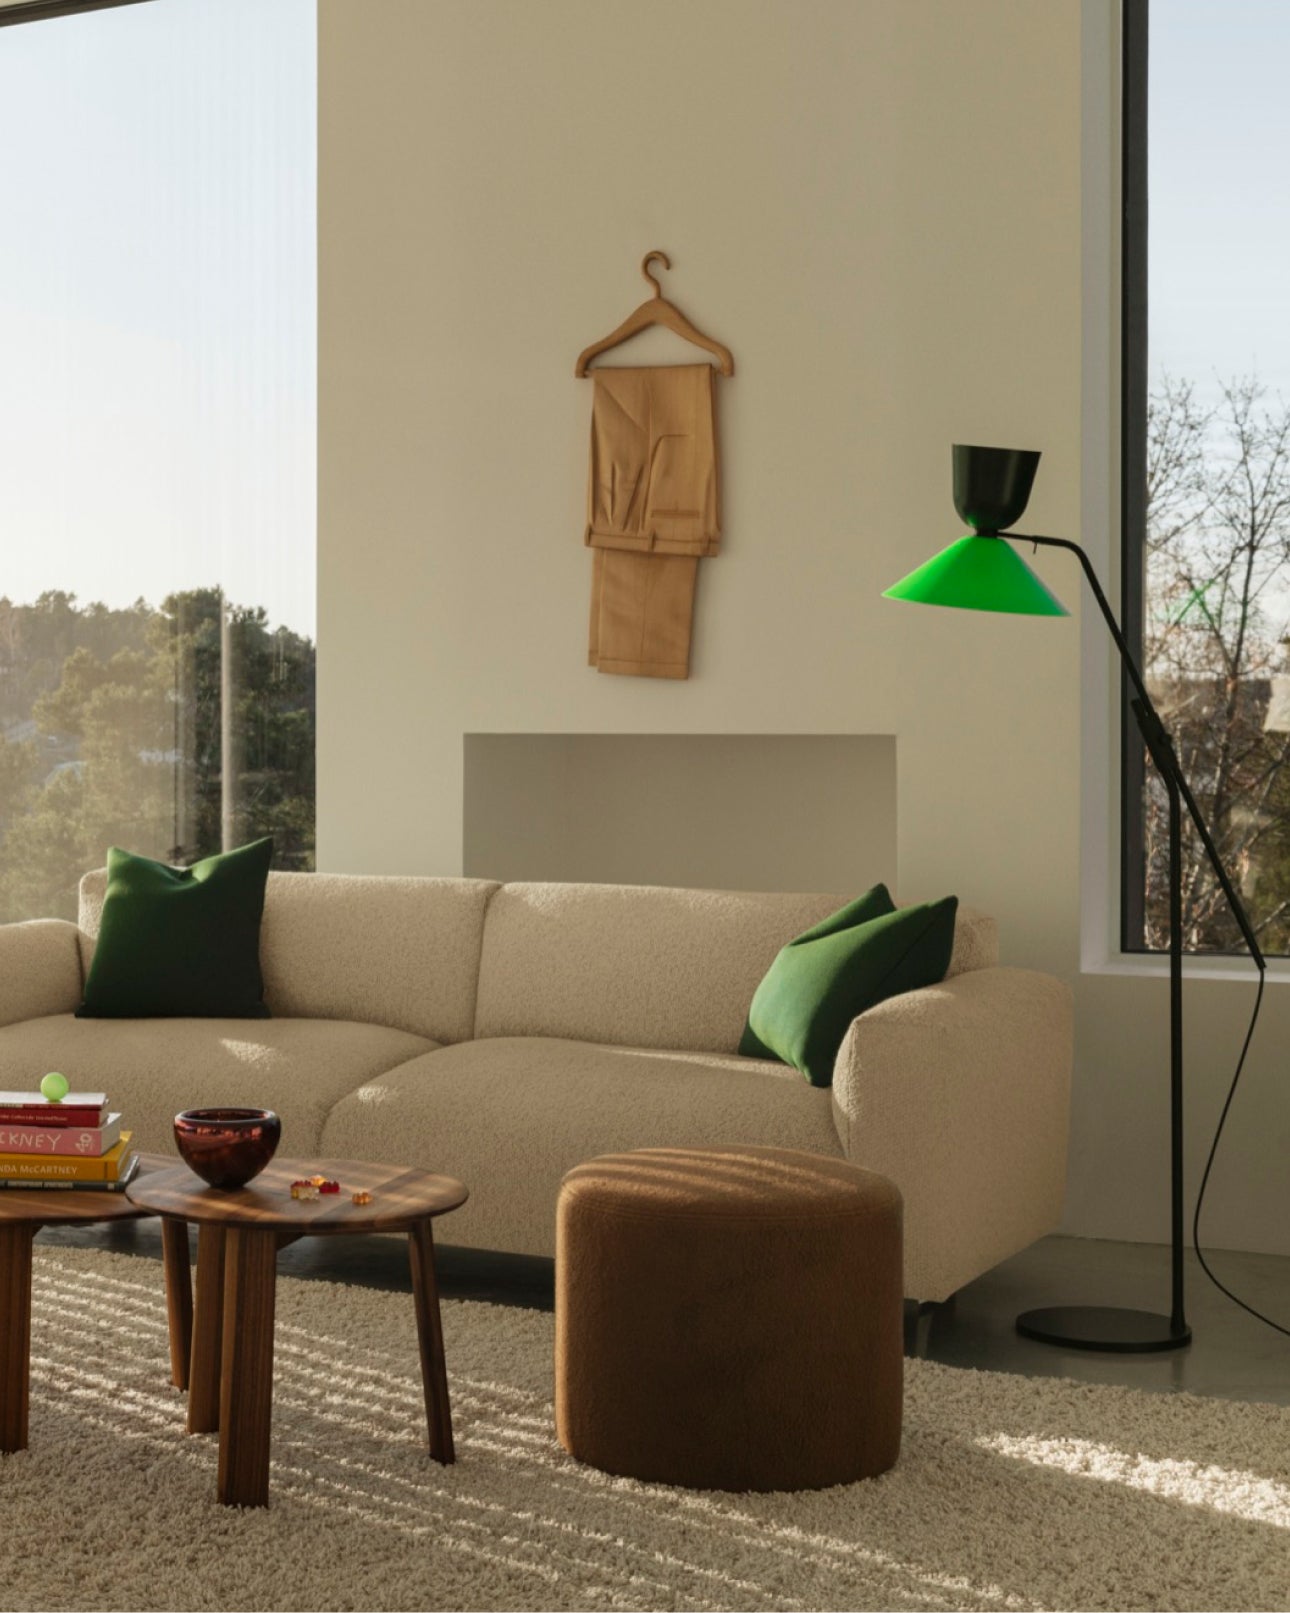 Living room scene featuring the Alphabeta Floor Lamp.